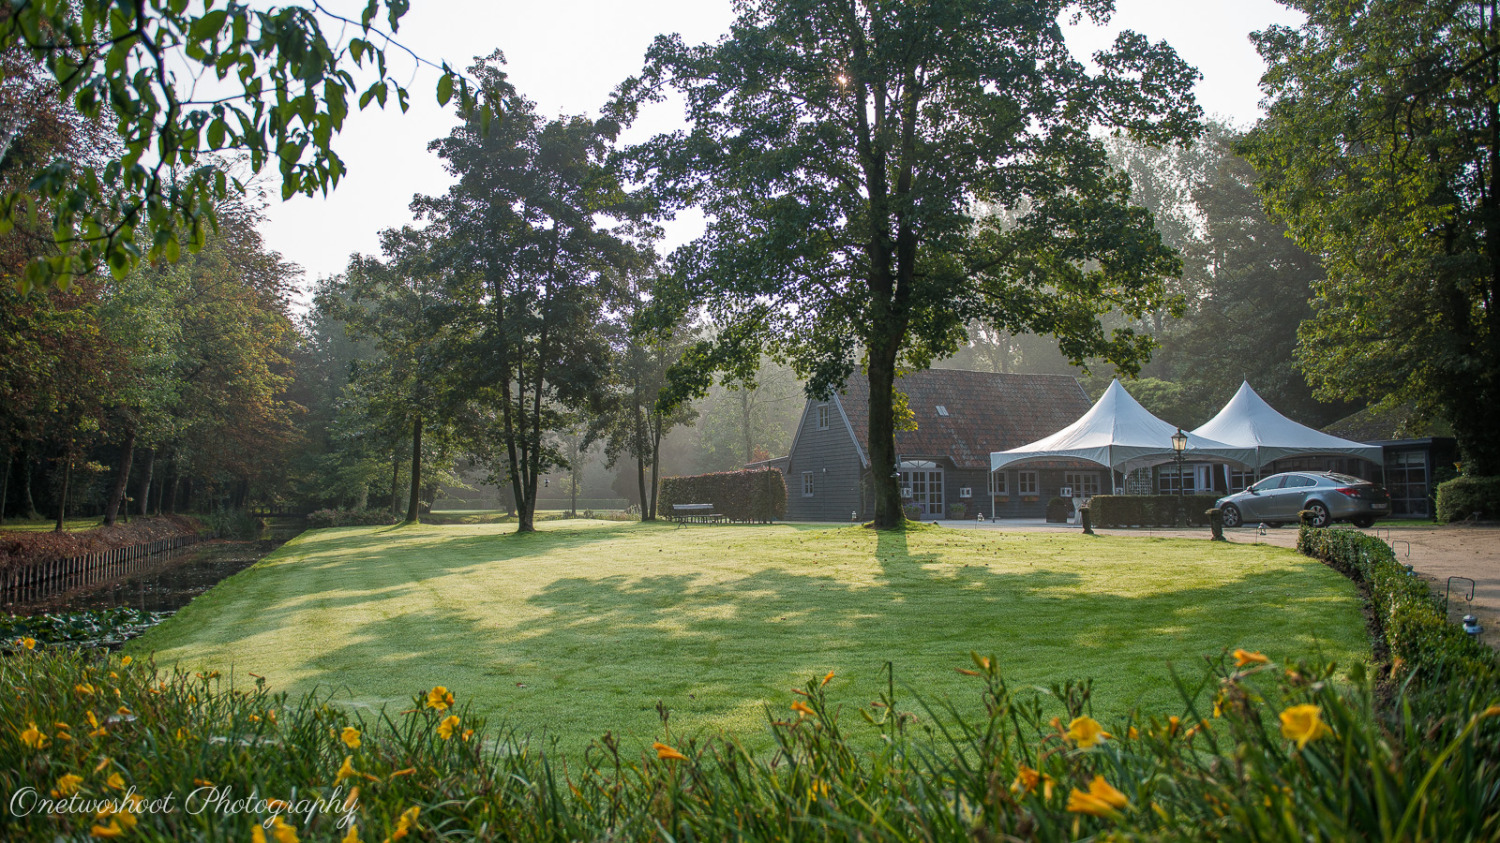 Het domein 't Meersdael is ook ideaal voor huwelijksfeesten. Er is ruimte genoeg voor alle gasten, een mooie grote tuin is een schitterend decor voor het huwelijksfeest met alle gasten. Voor de huwelijksfotograaf geeft een dergelijk mooi en groen park veel mogelijkheden als decor.